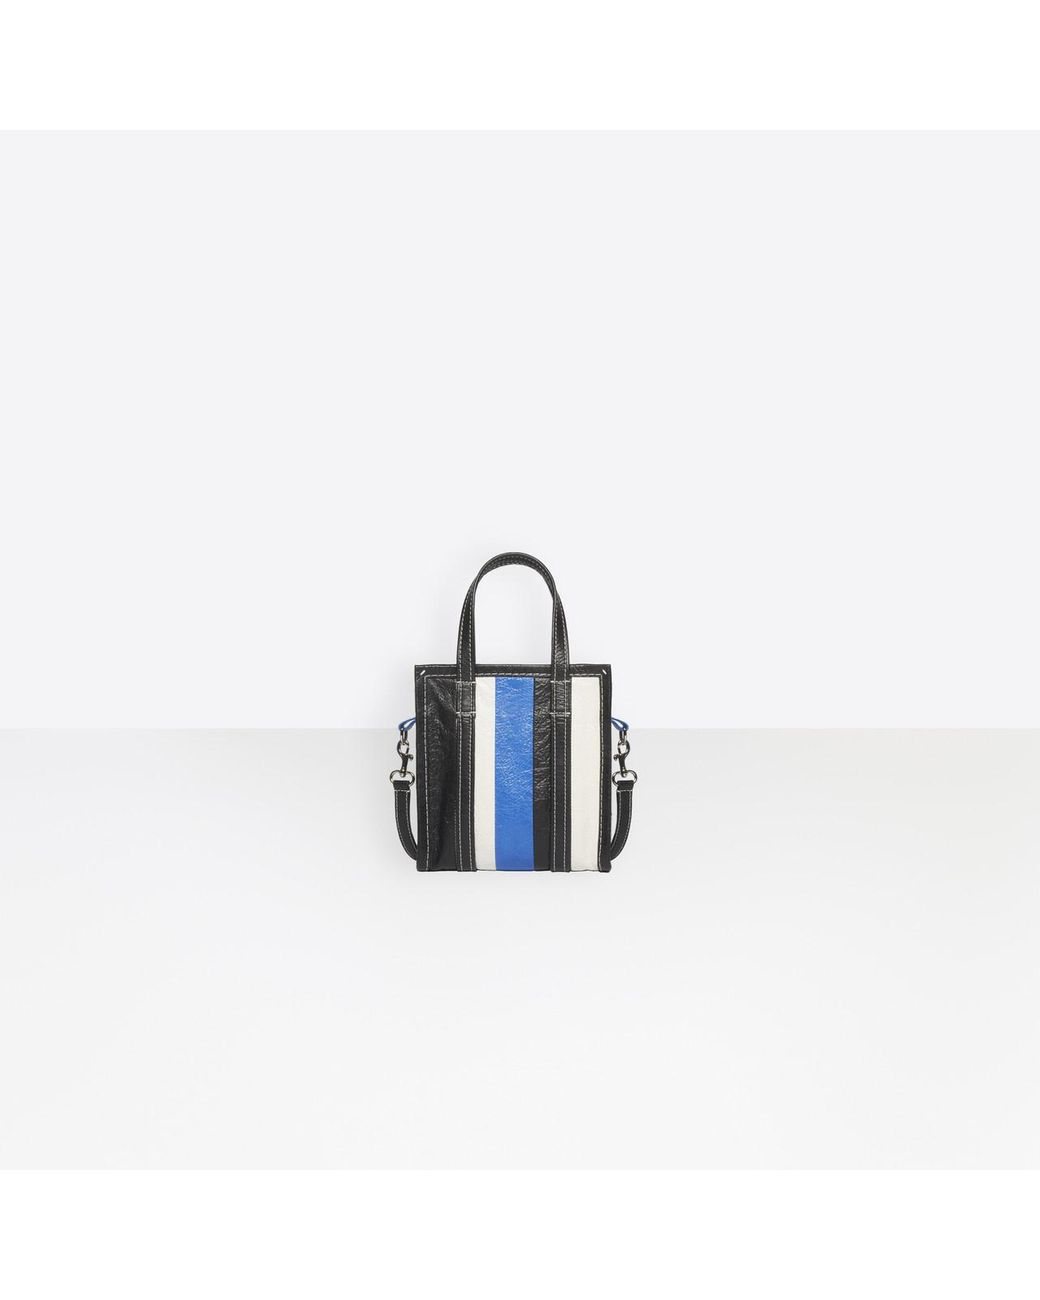 Balenciaga Leather Bazar Shopper Xxs in Black/ Blue (Blue) | Lyst